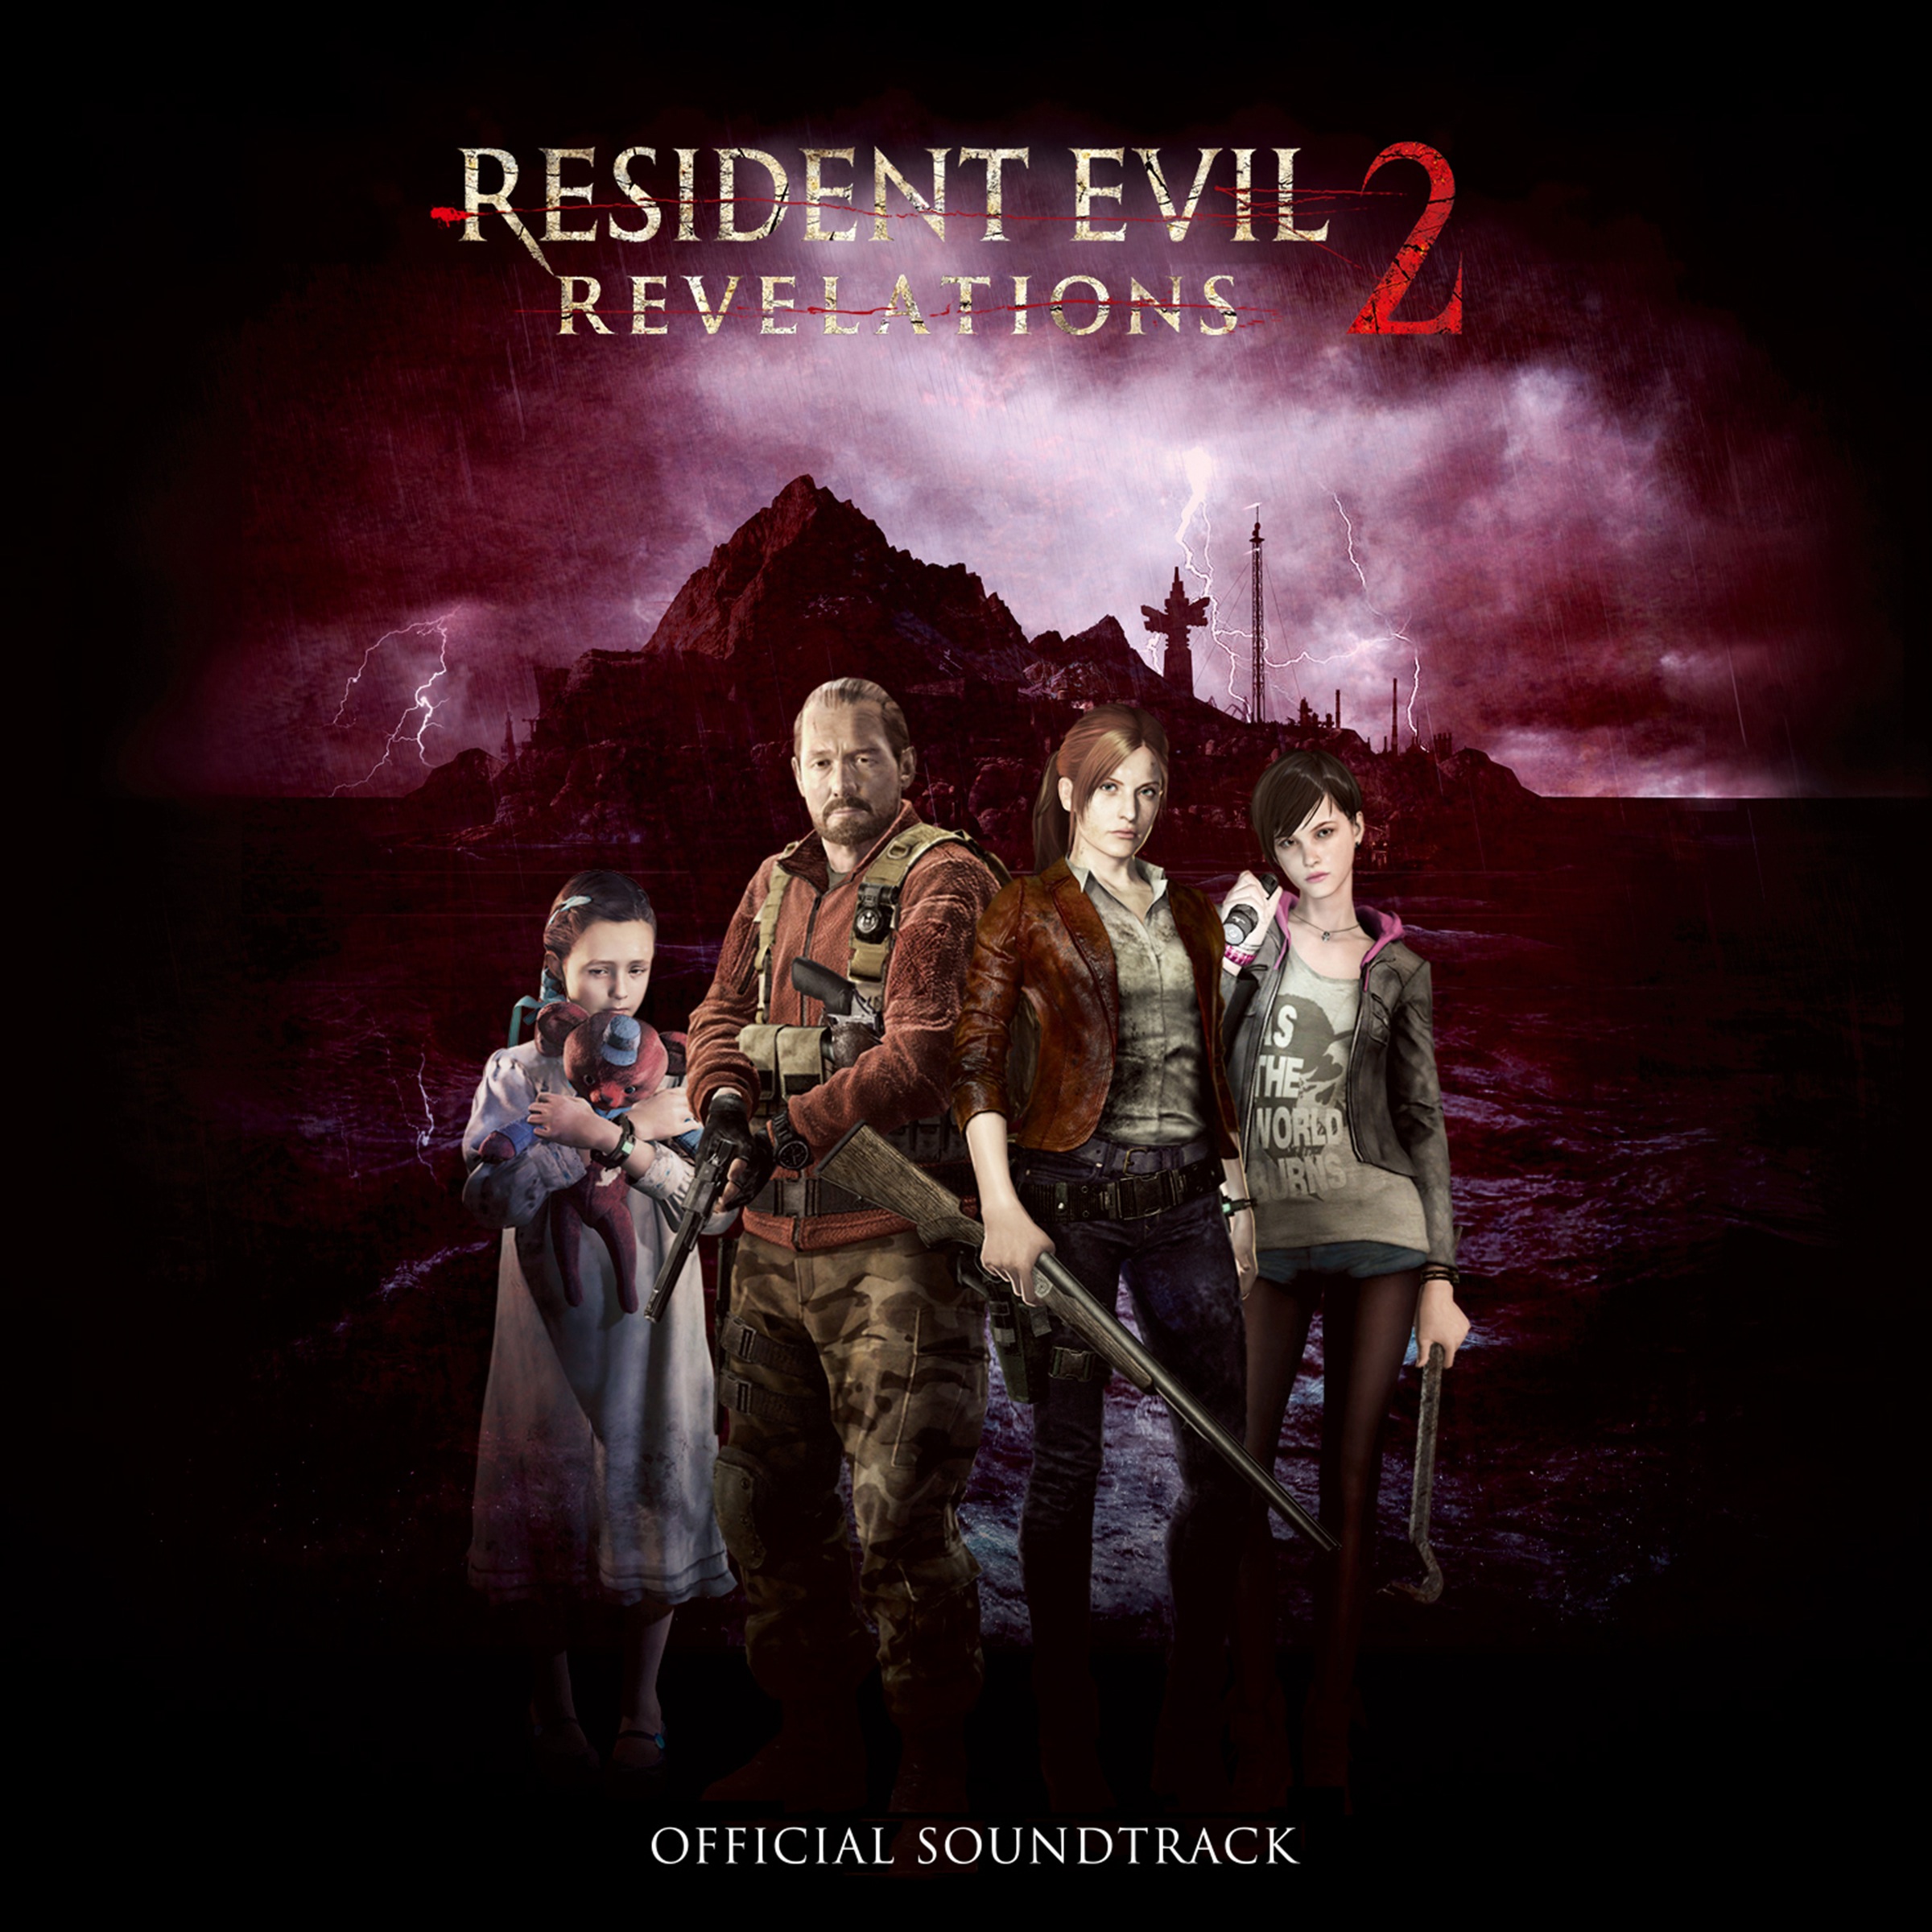 resident evil revelations 2 soundtrack torrent